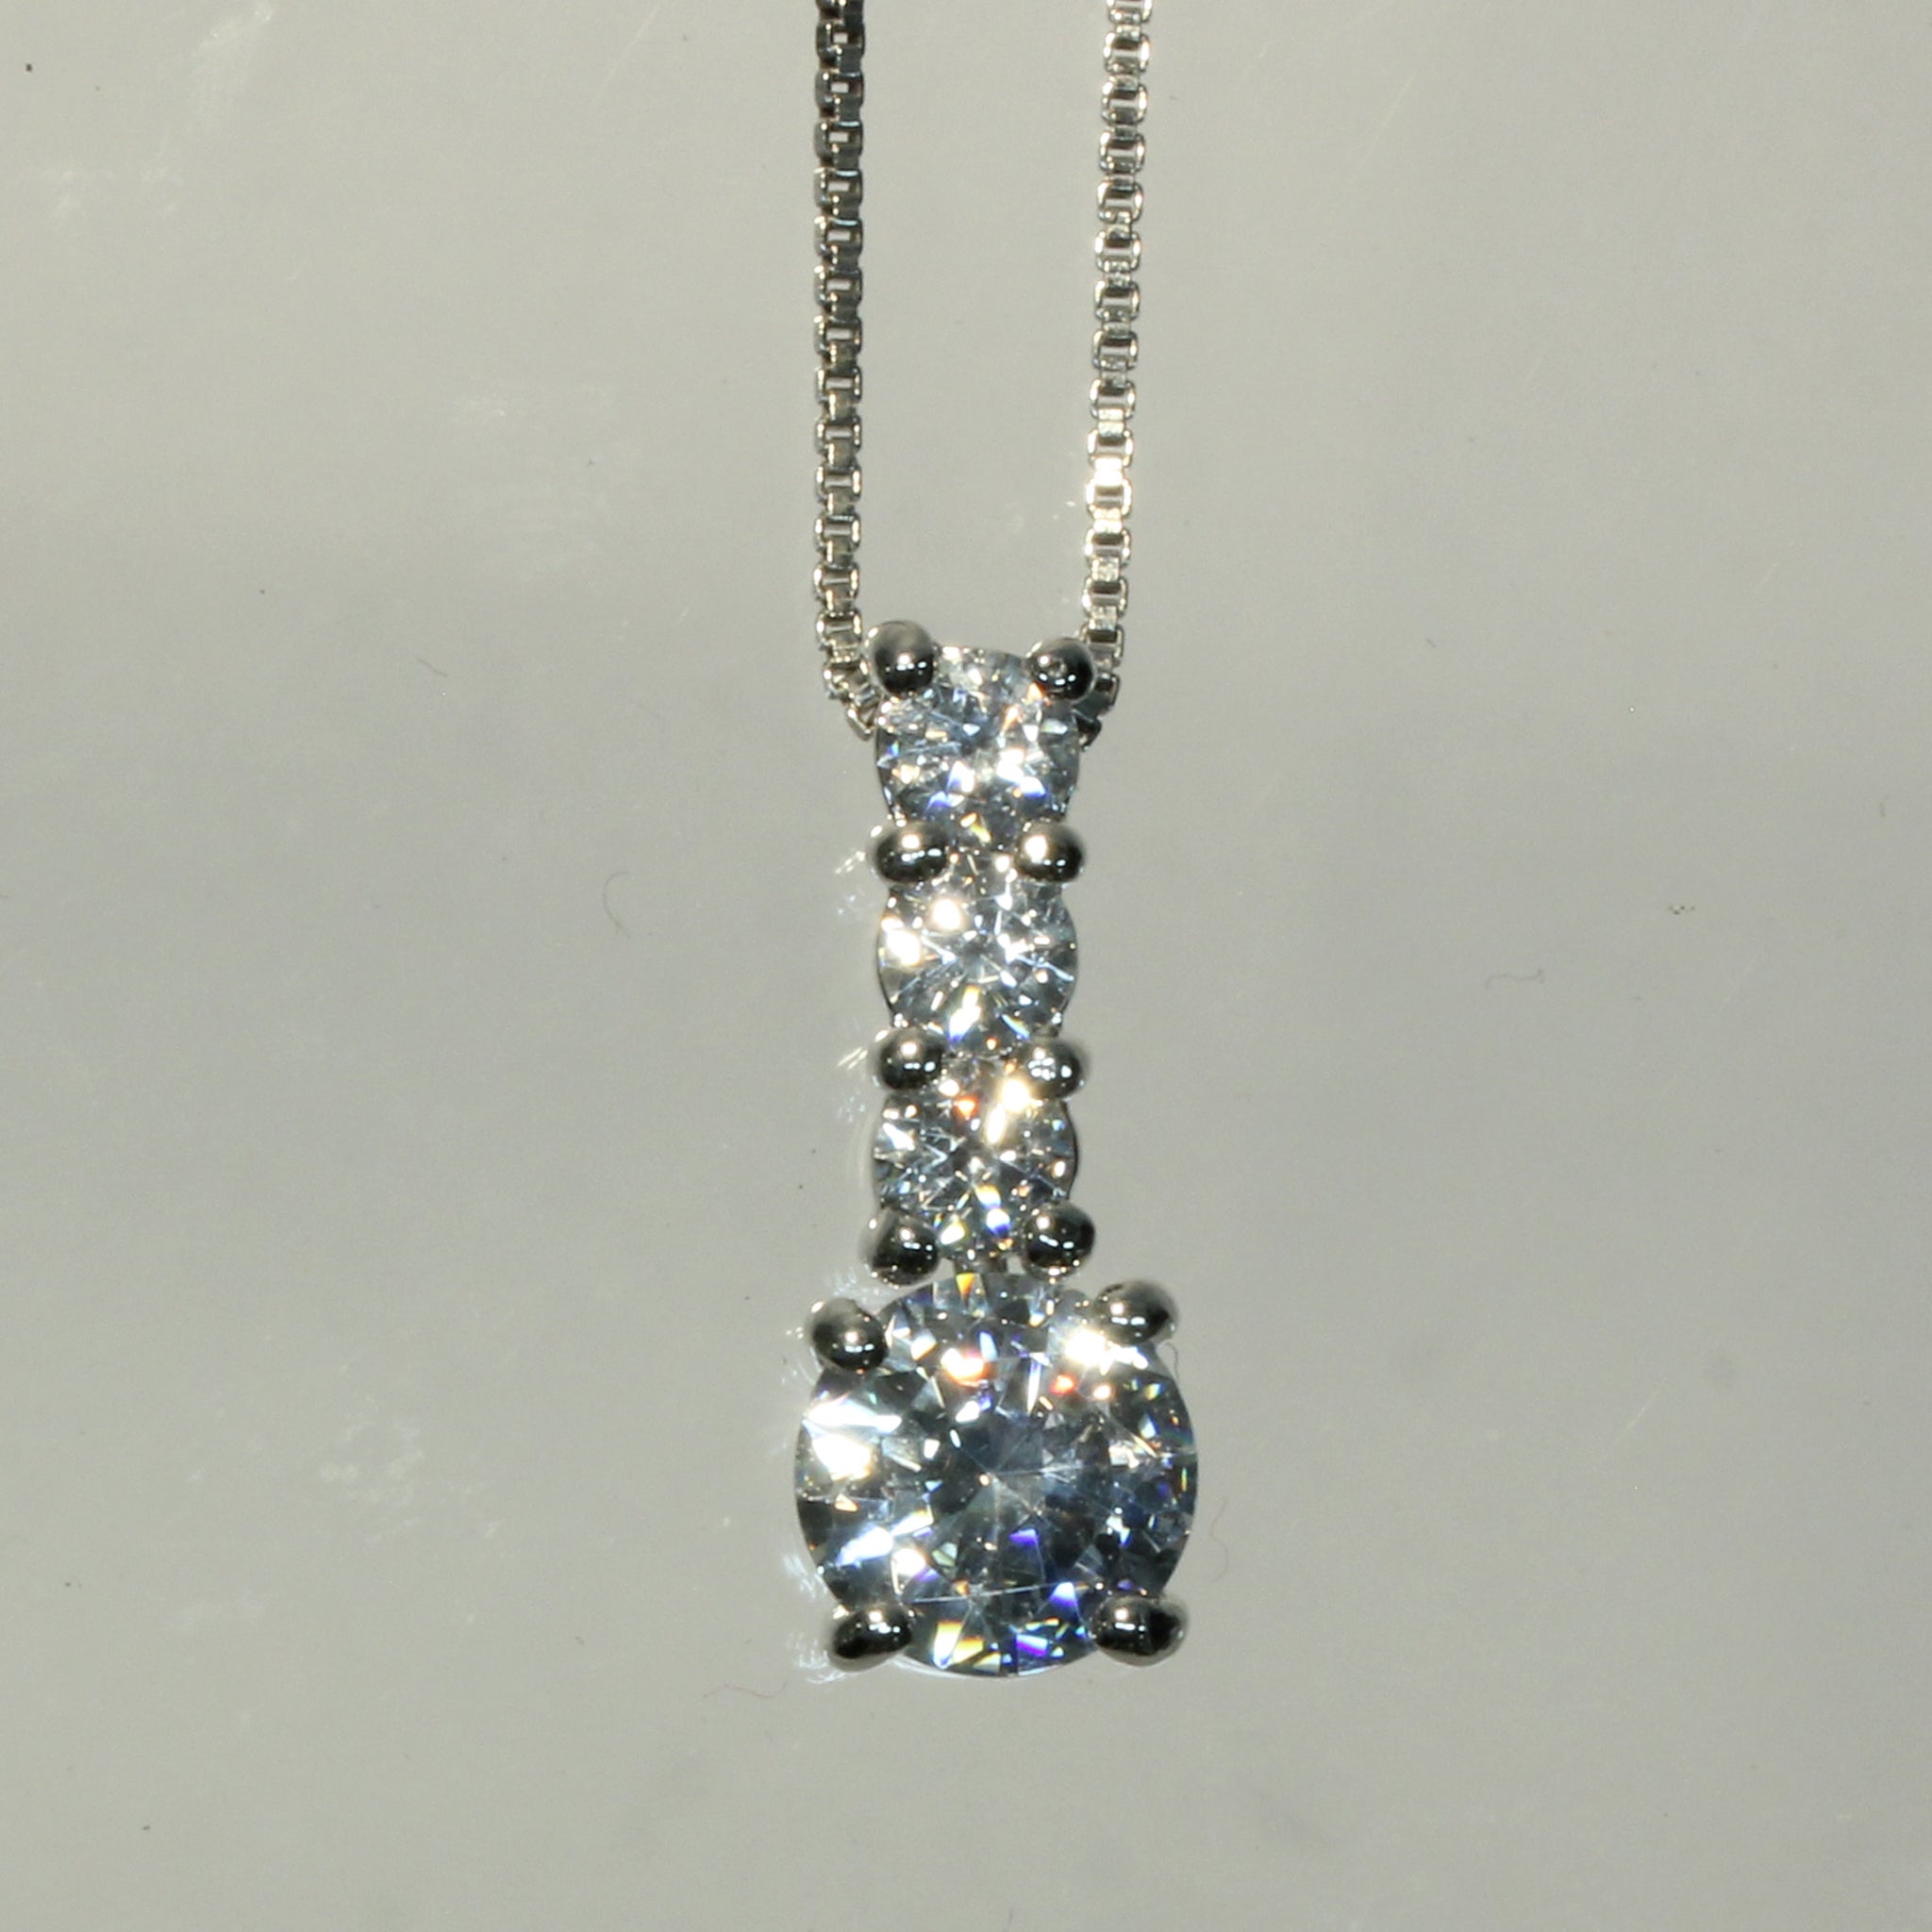 Buy One Bezel Stone Diamond Pendant Online India